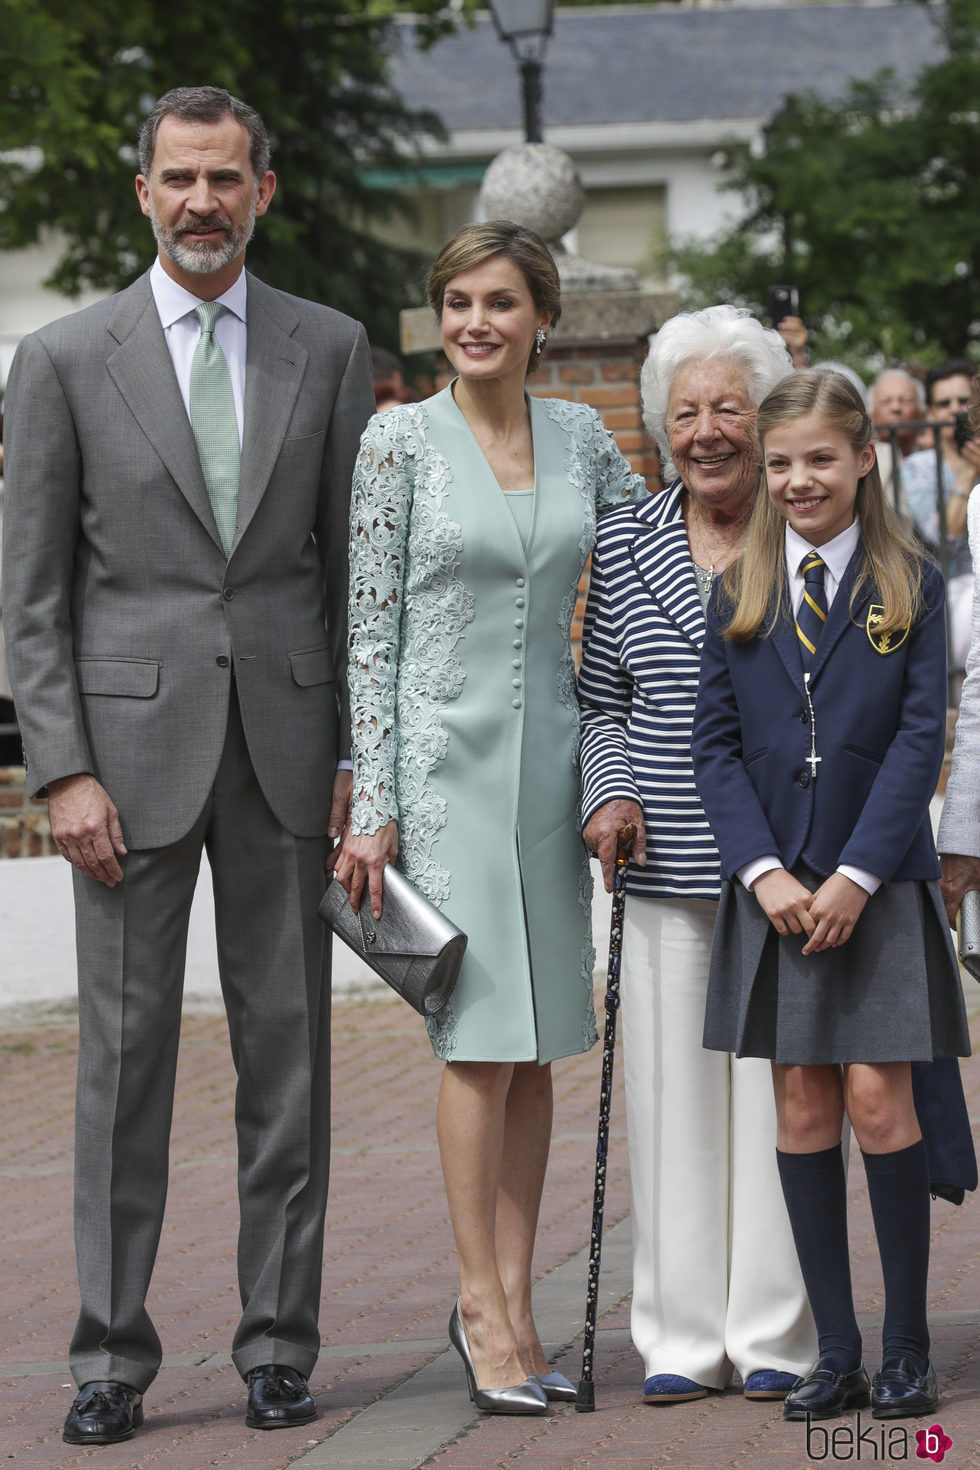 La Infanta Sofía con sus padres y su bisabuela Menchu Álvarez del Valle el día de su Comunión